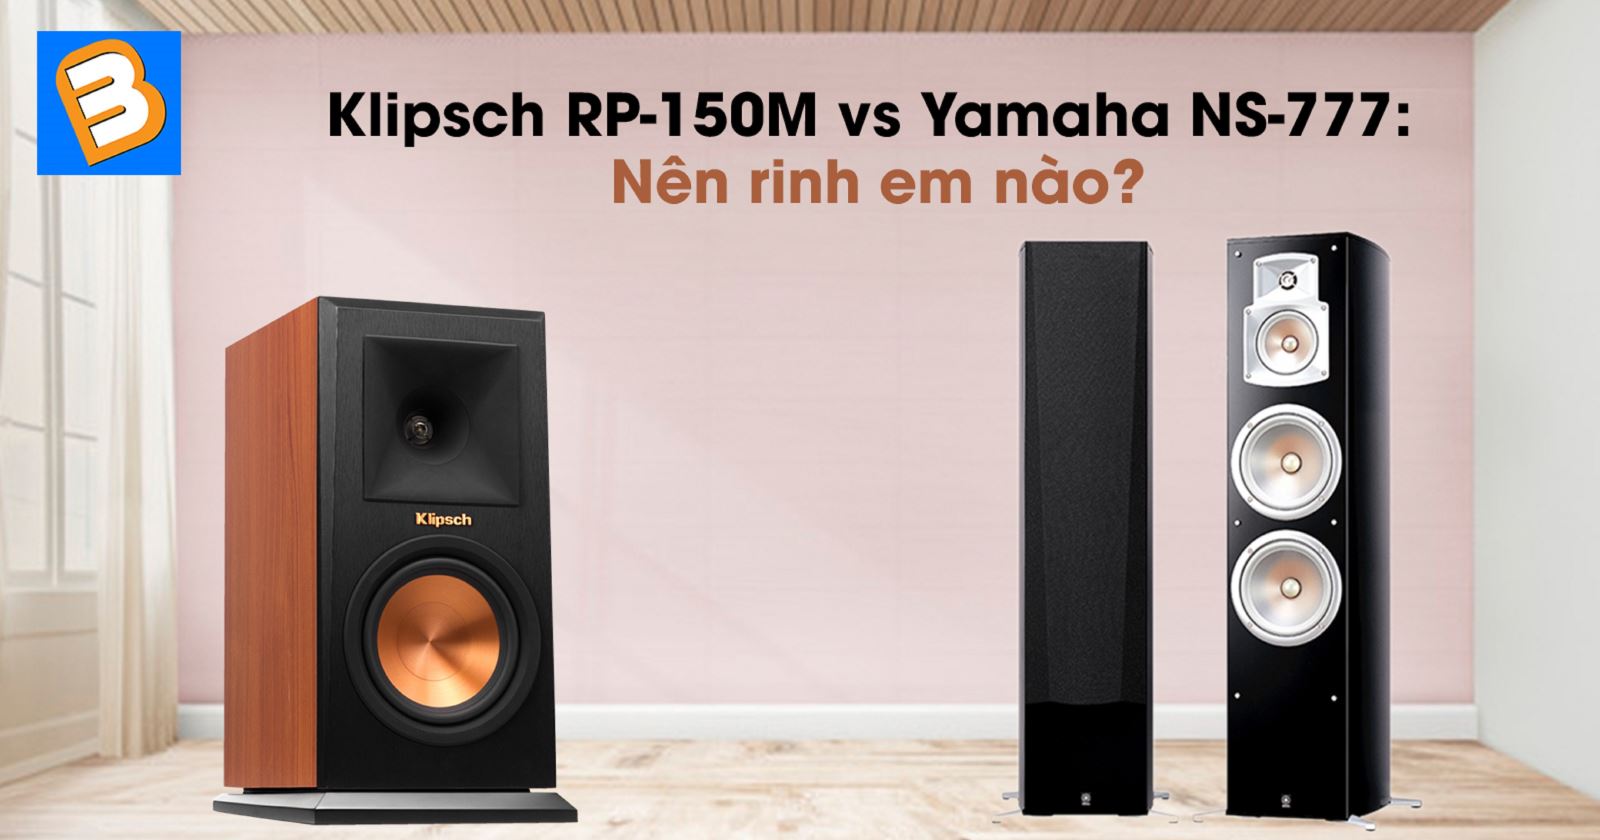 Klipsch RP-150M vs Yamaha NS-777: Nên rinh em nào?